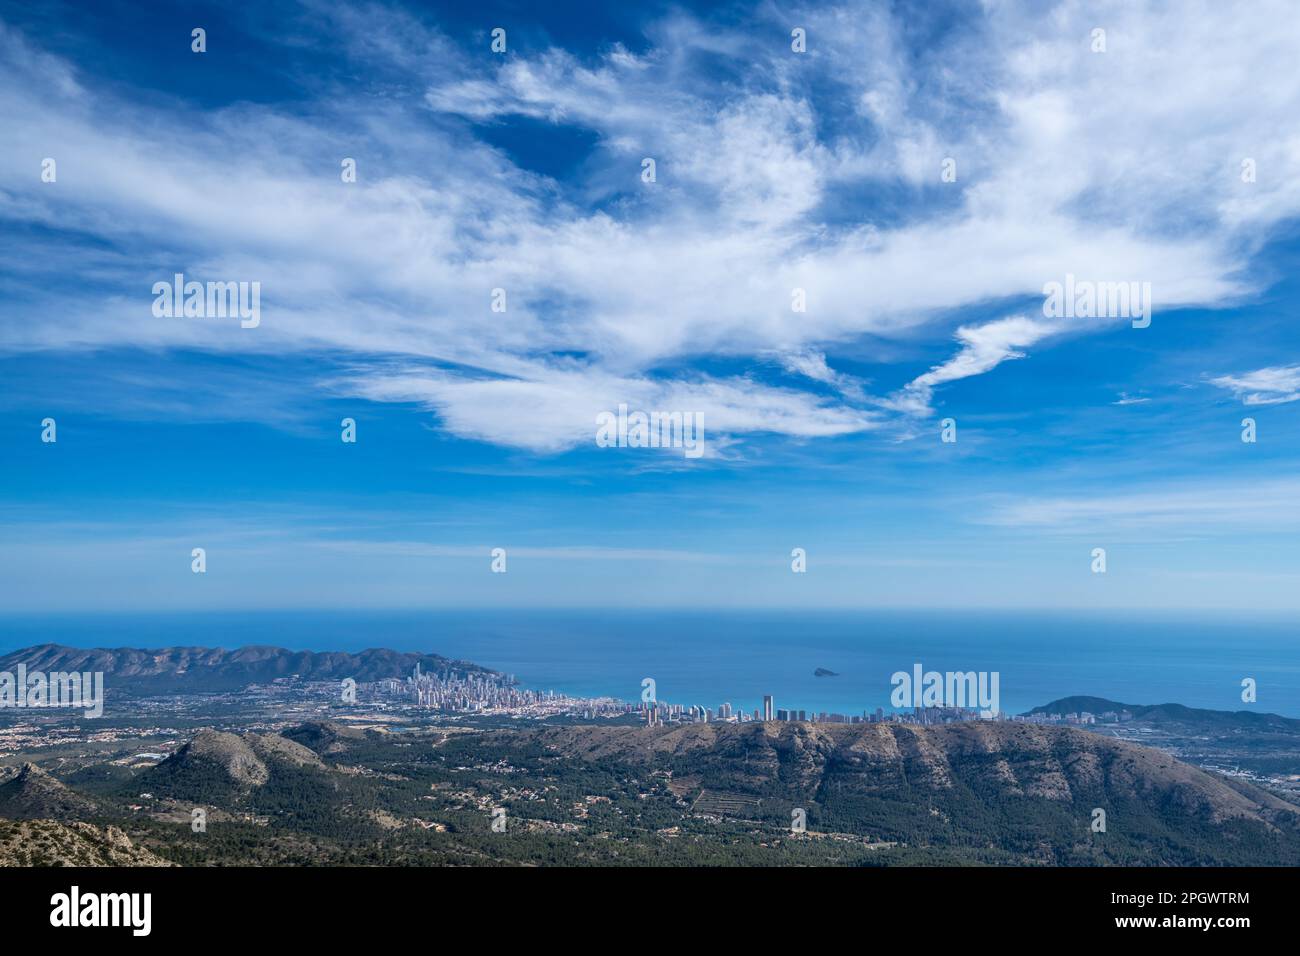 Benidorm city seen from Puig Campana mountain near Finestrat, Spain Stock Photo